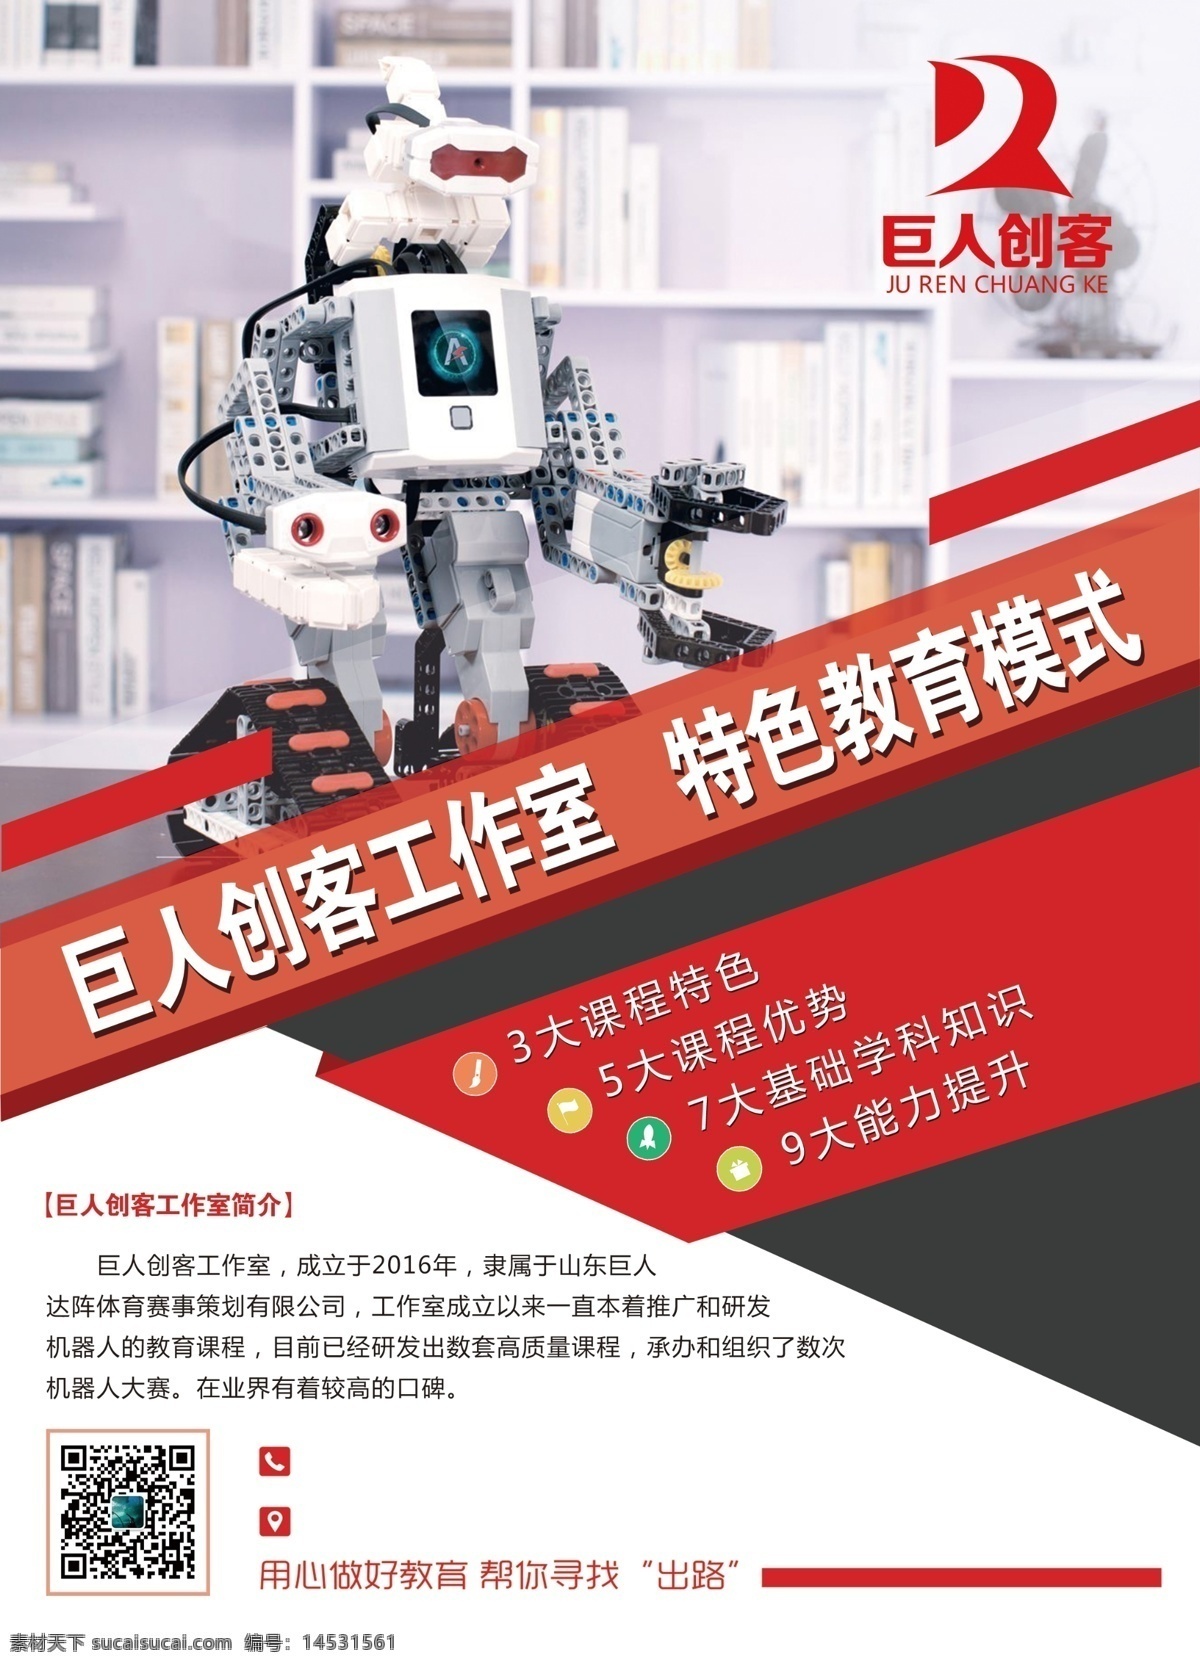 机器人教育 巨人创客 机器人 教育 辅导班 机器人招生 招生 分层